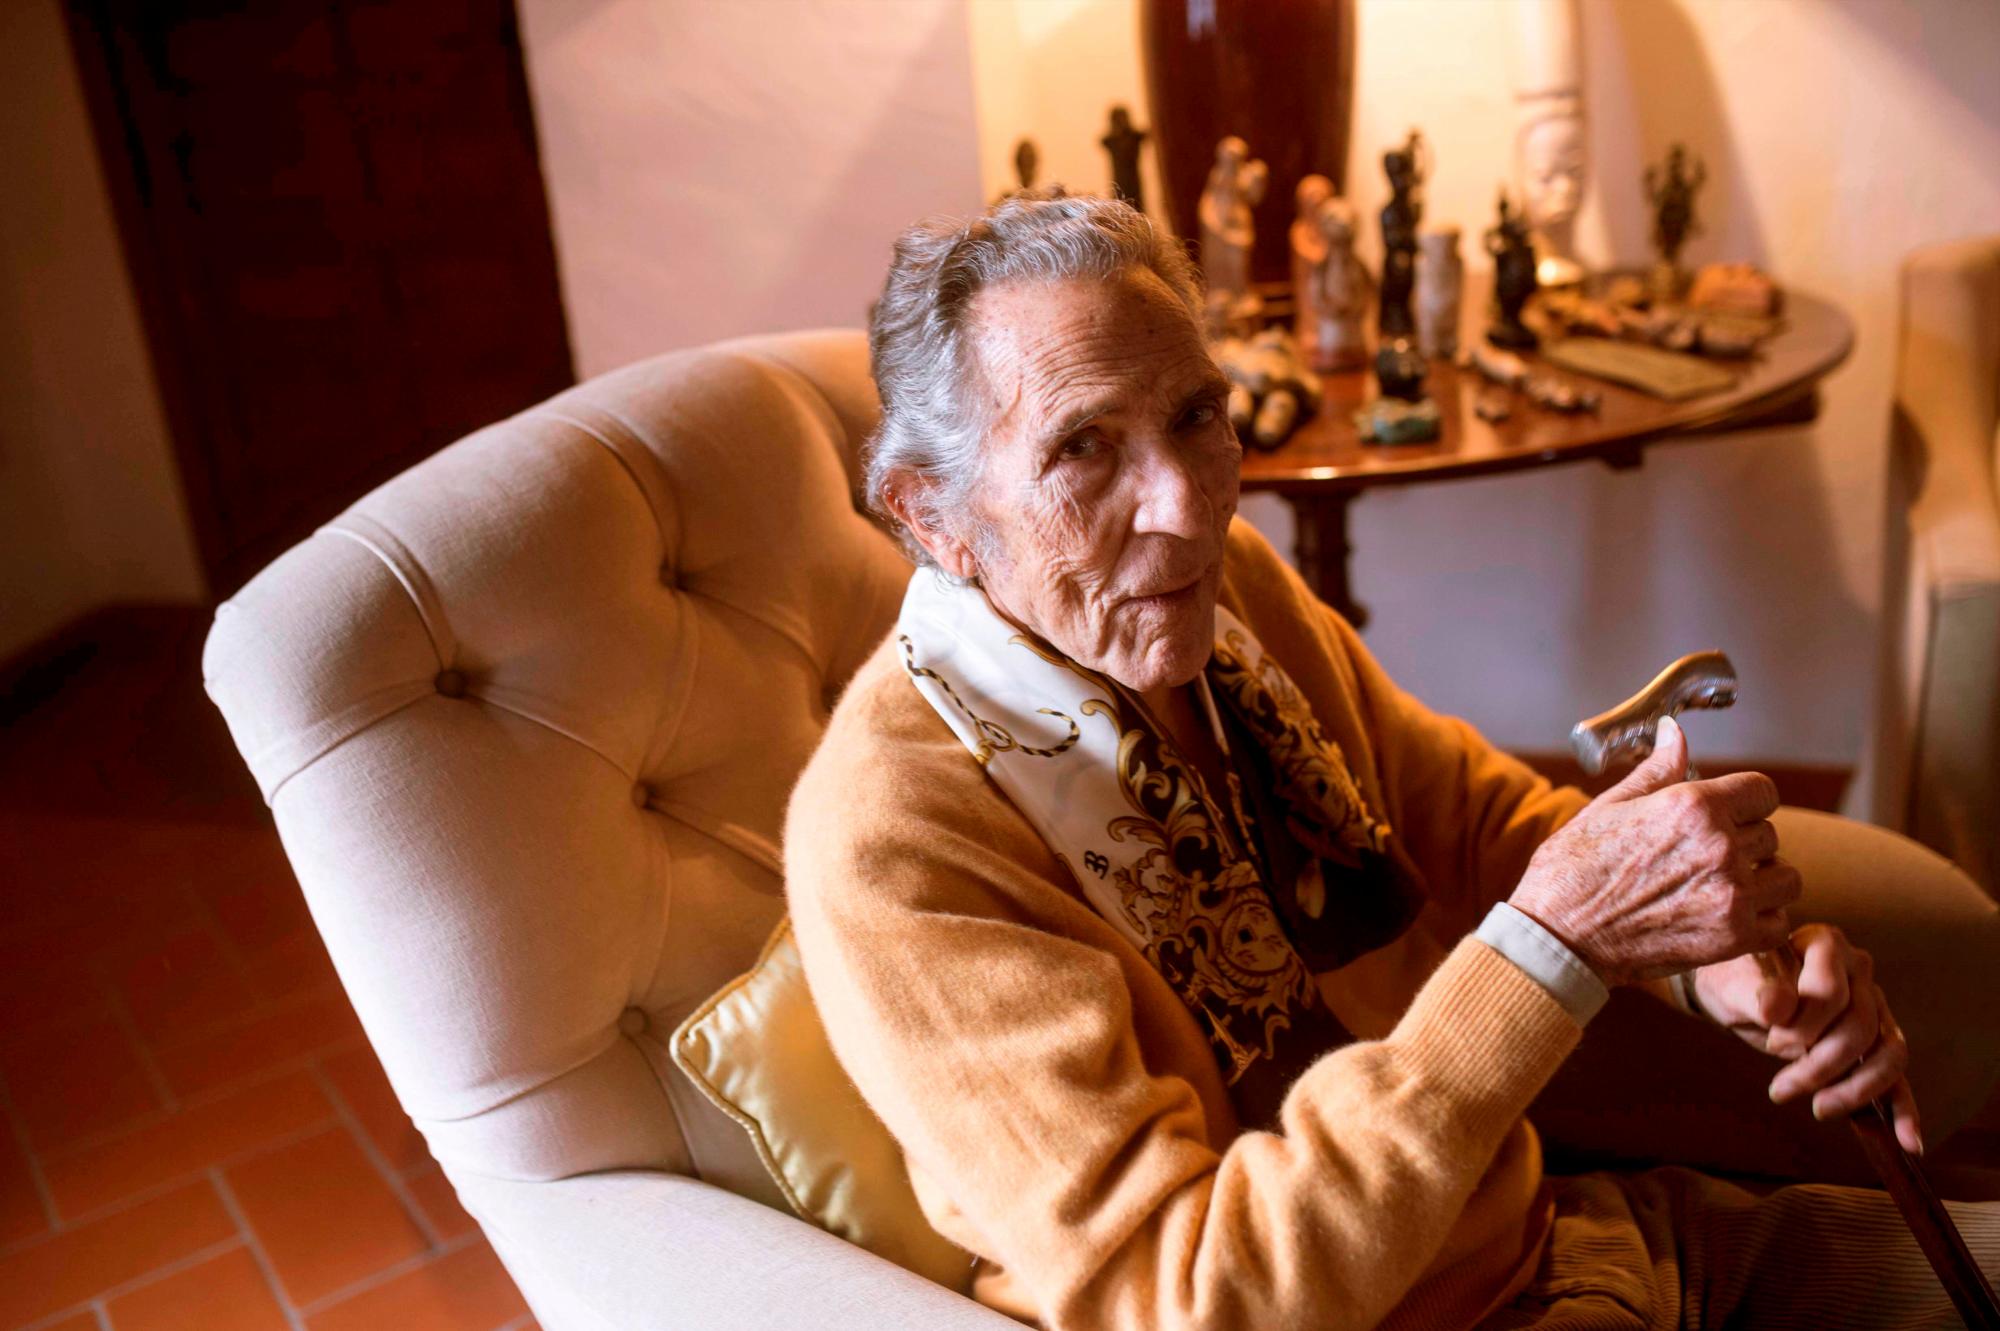 Muere Antonio Gala a los 92 años